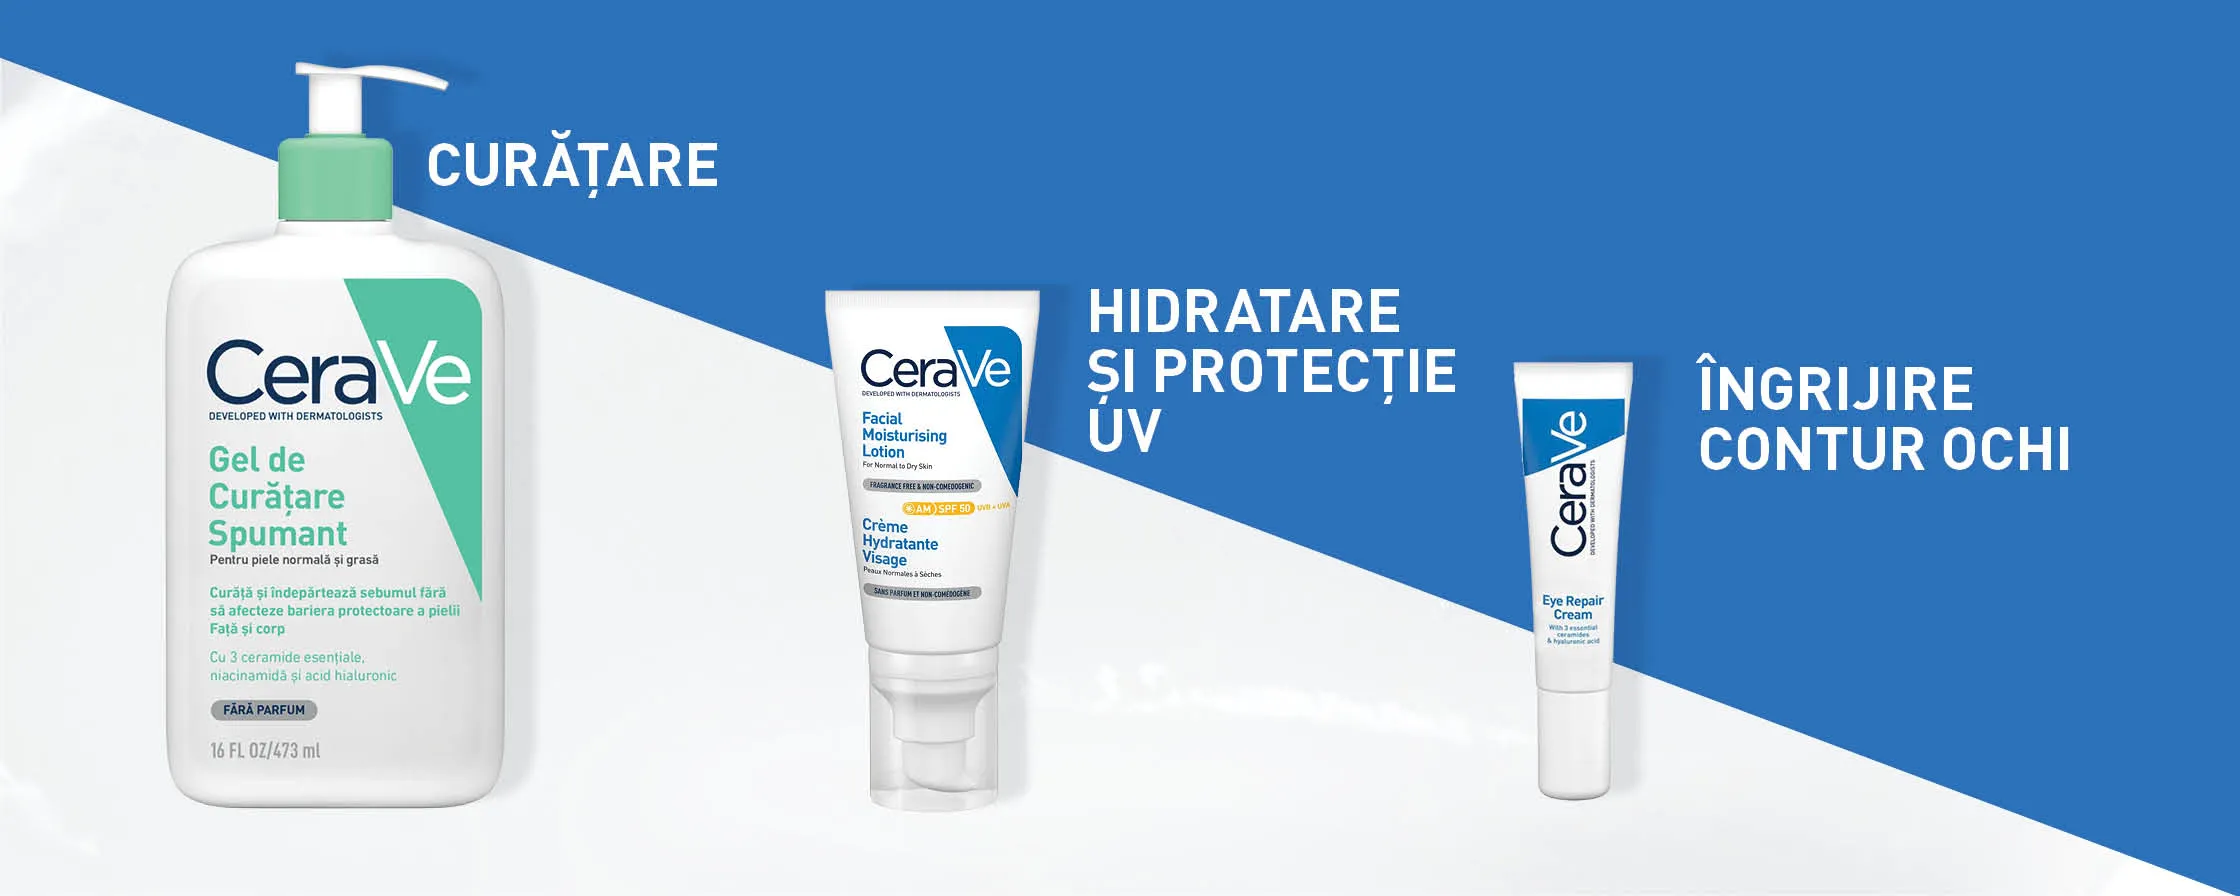 Curatare, hidratare si protectie UV, ingrijire contur ochi